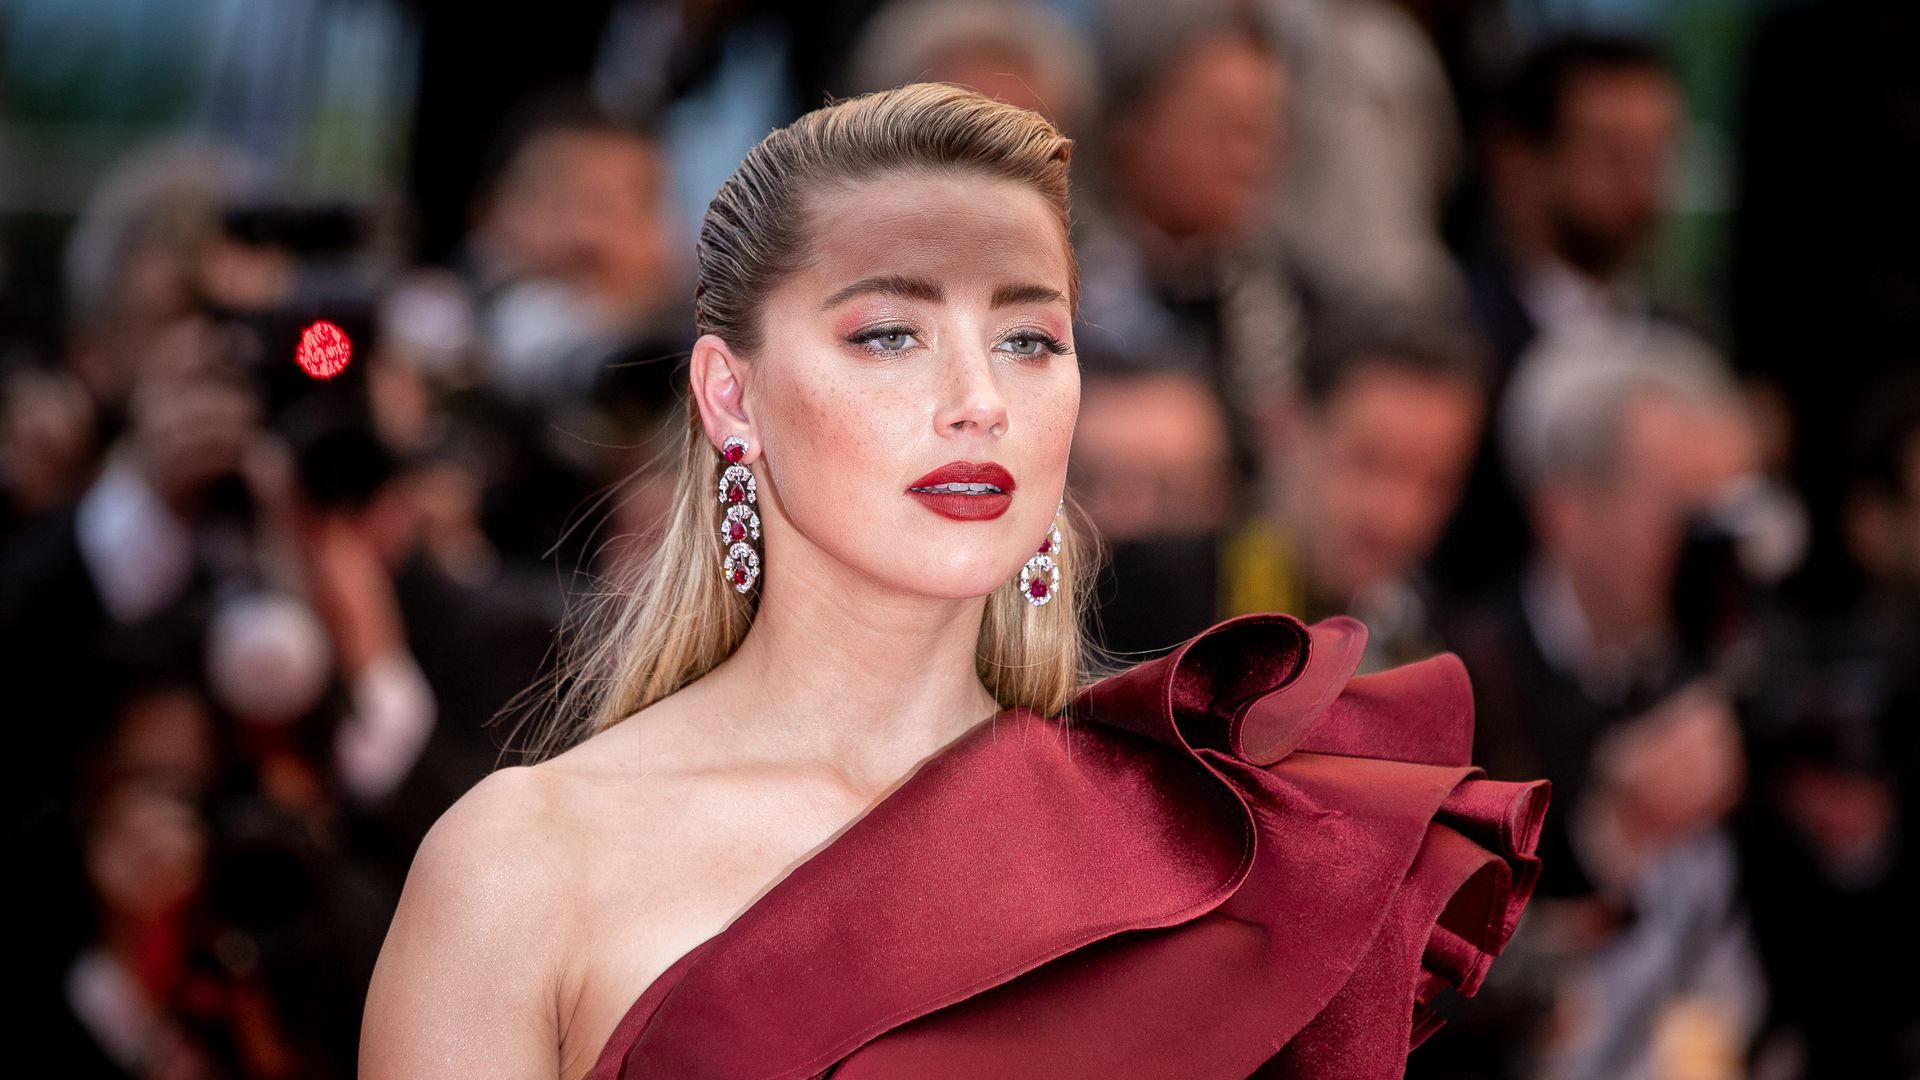 Amber Heard Breaks Her Silence As She Returns To Social Media For The